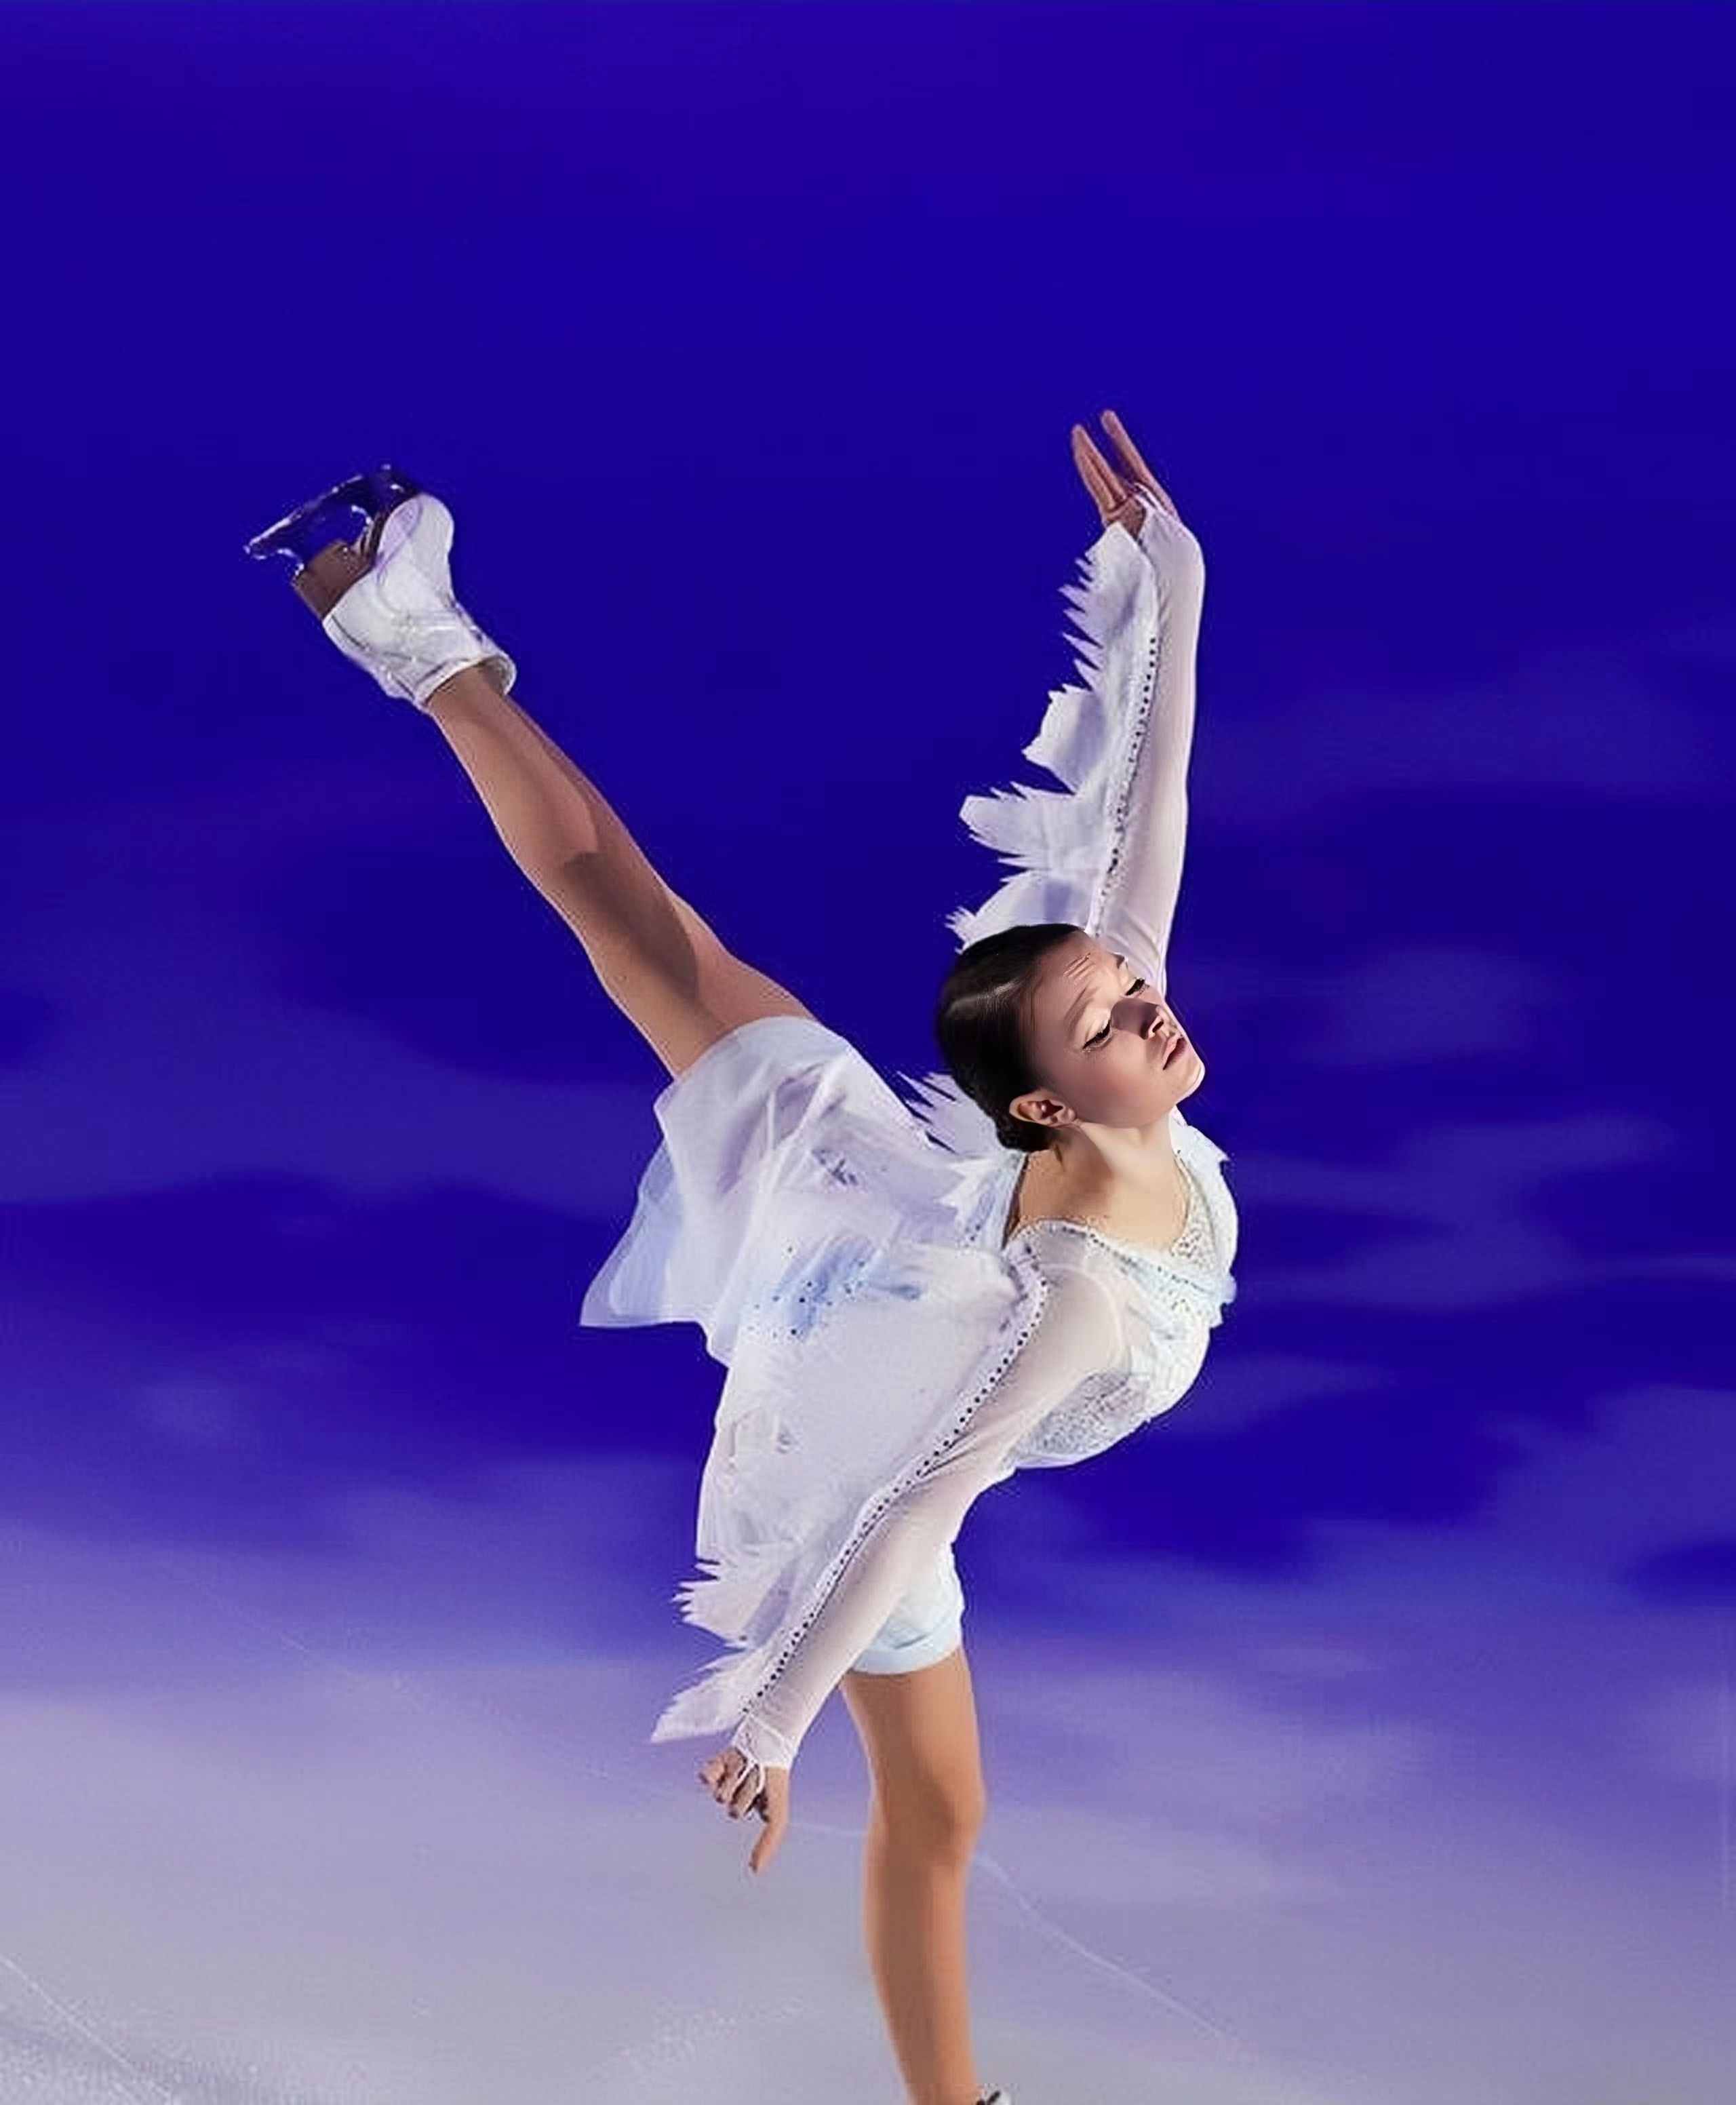 花滑千金谢尔巴科娃,赛场表演一秒换装,天鹅般的舞姿惊艳所有人